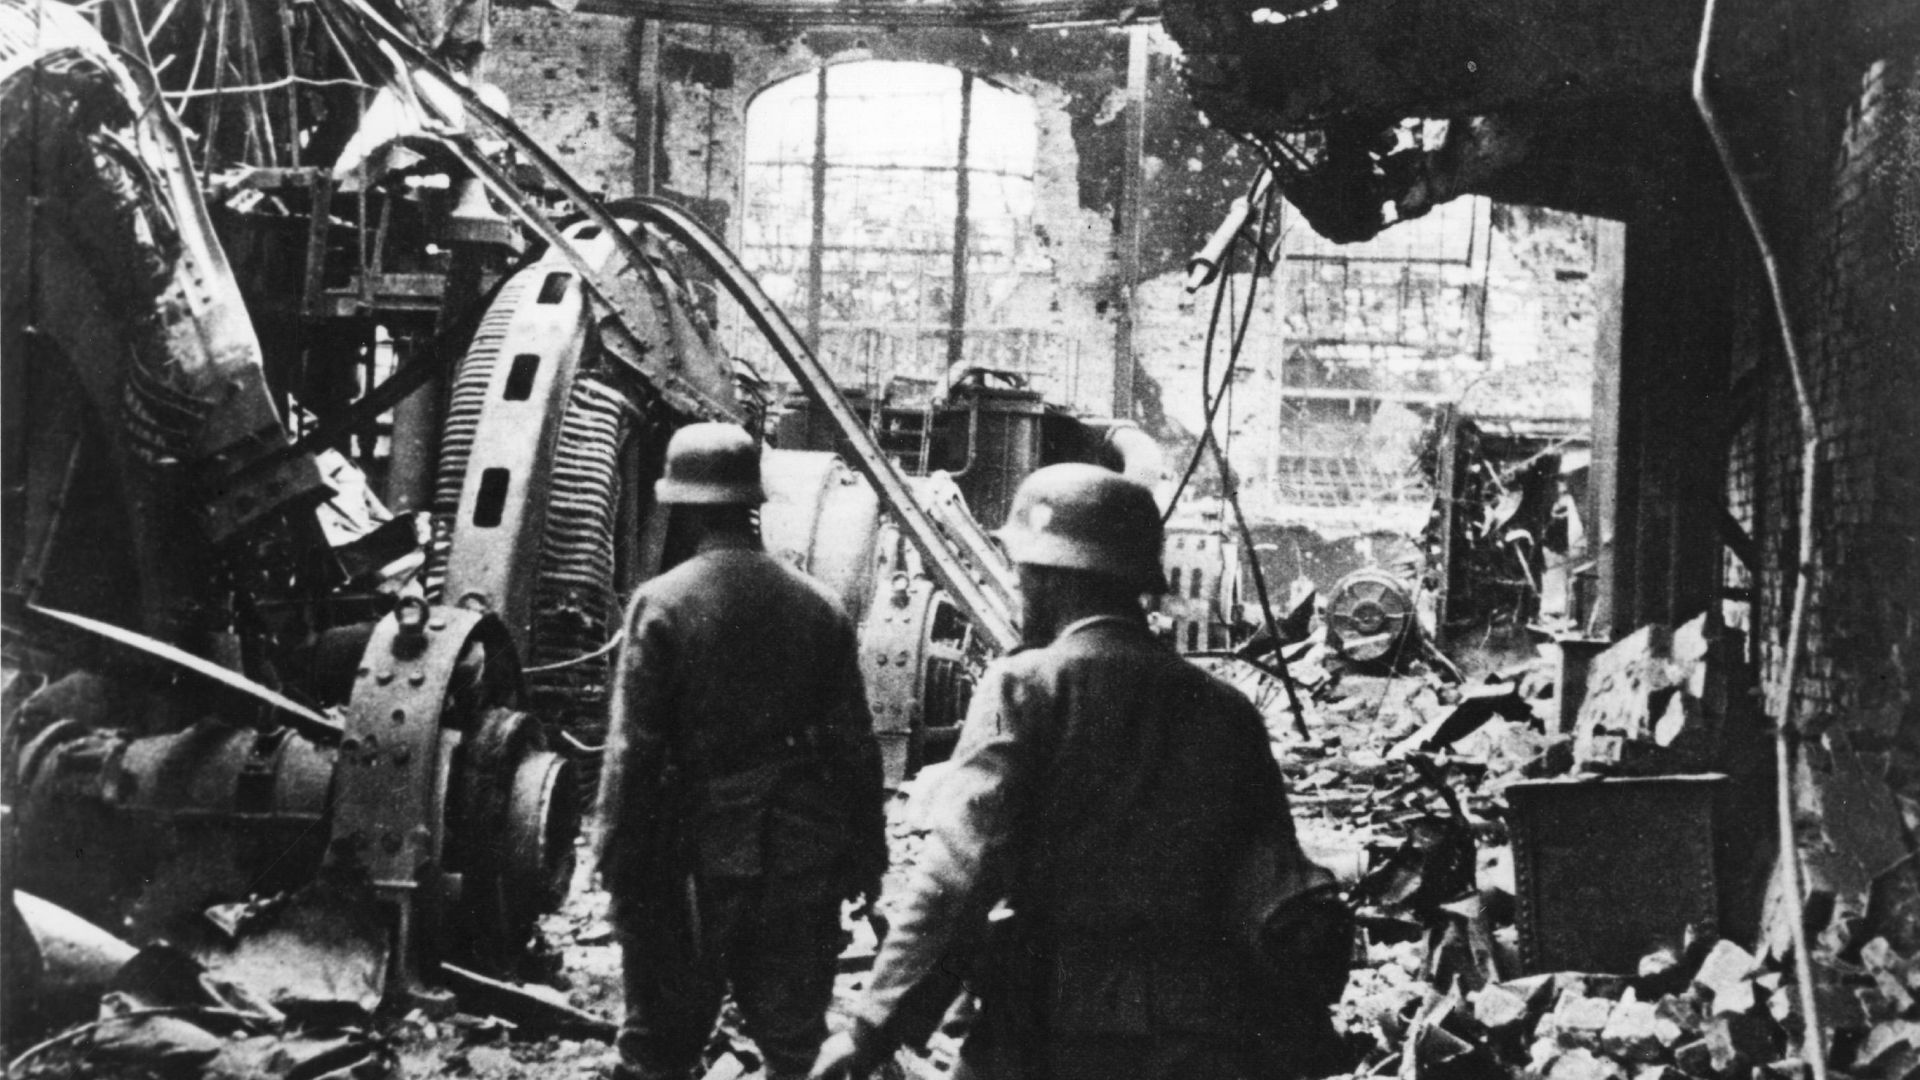 Des soldats nazis entrent dans une usine détruite, à Stalingrad, en 42